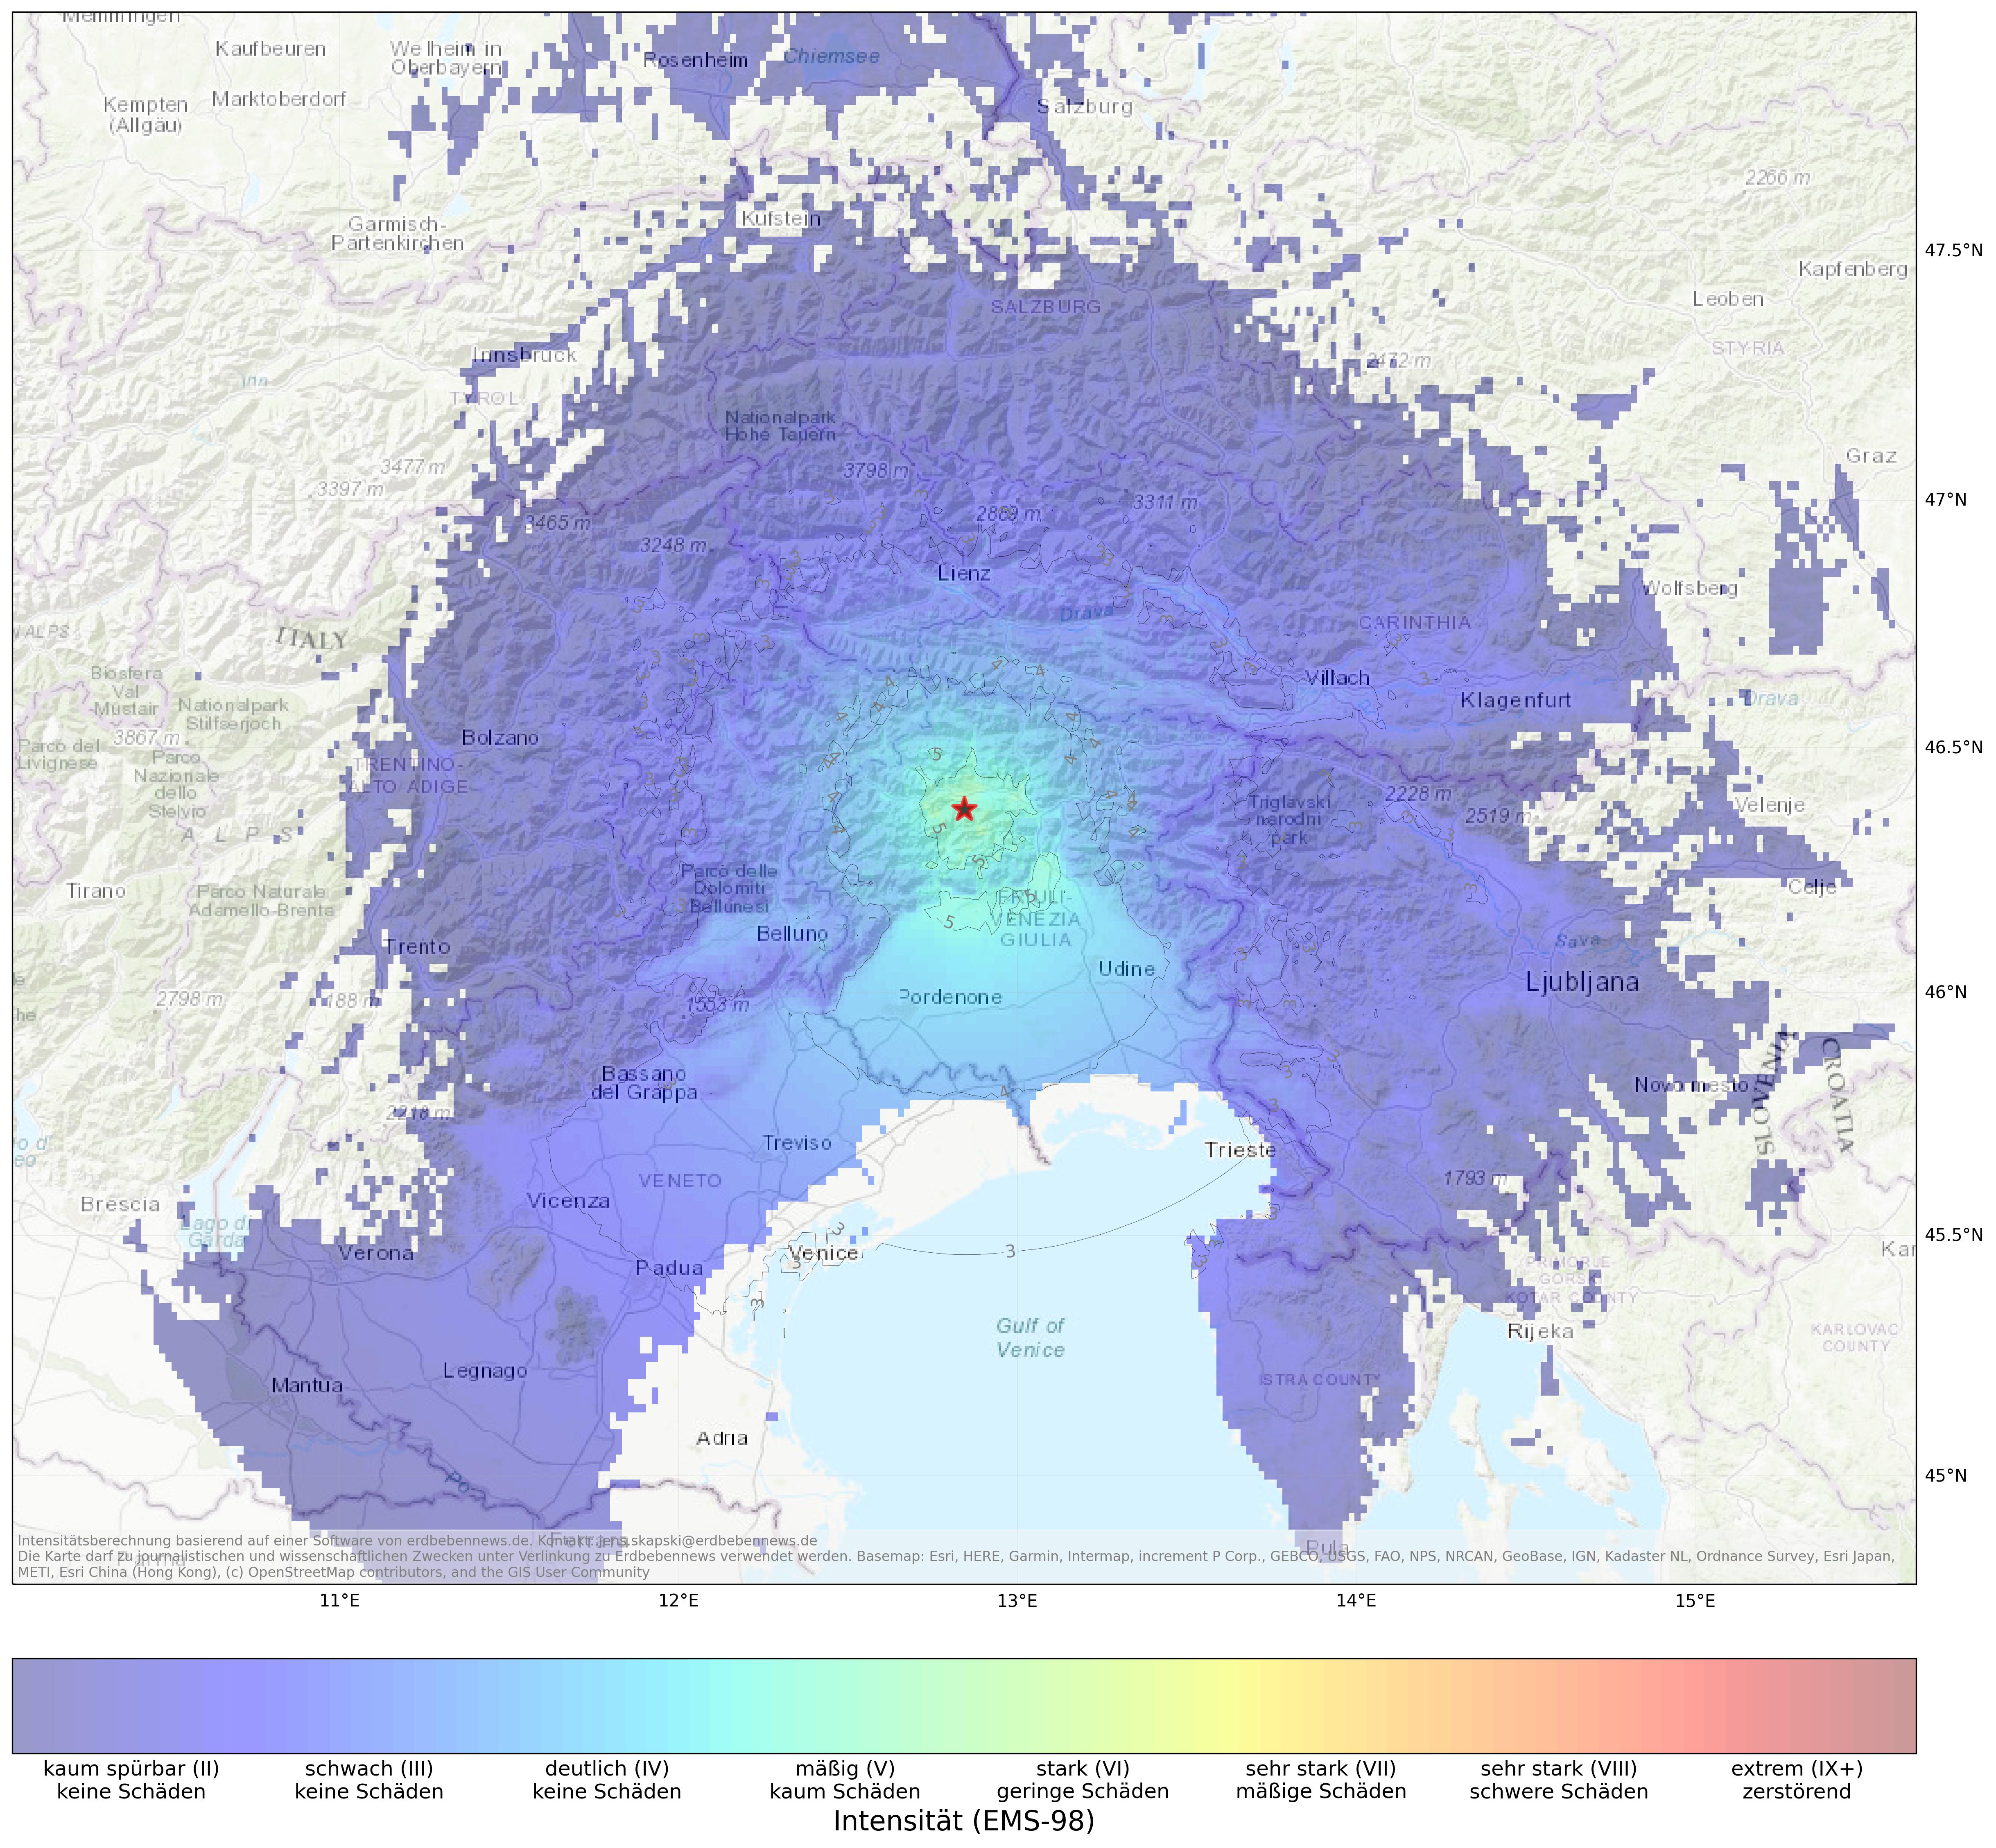 Berechnete Intensität (ShakeMap) des Erdbebens der Stärke 4.7 am 27. März, 22:19 Uhr in Italien